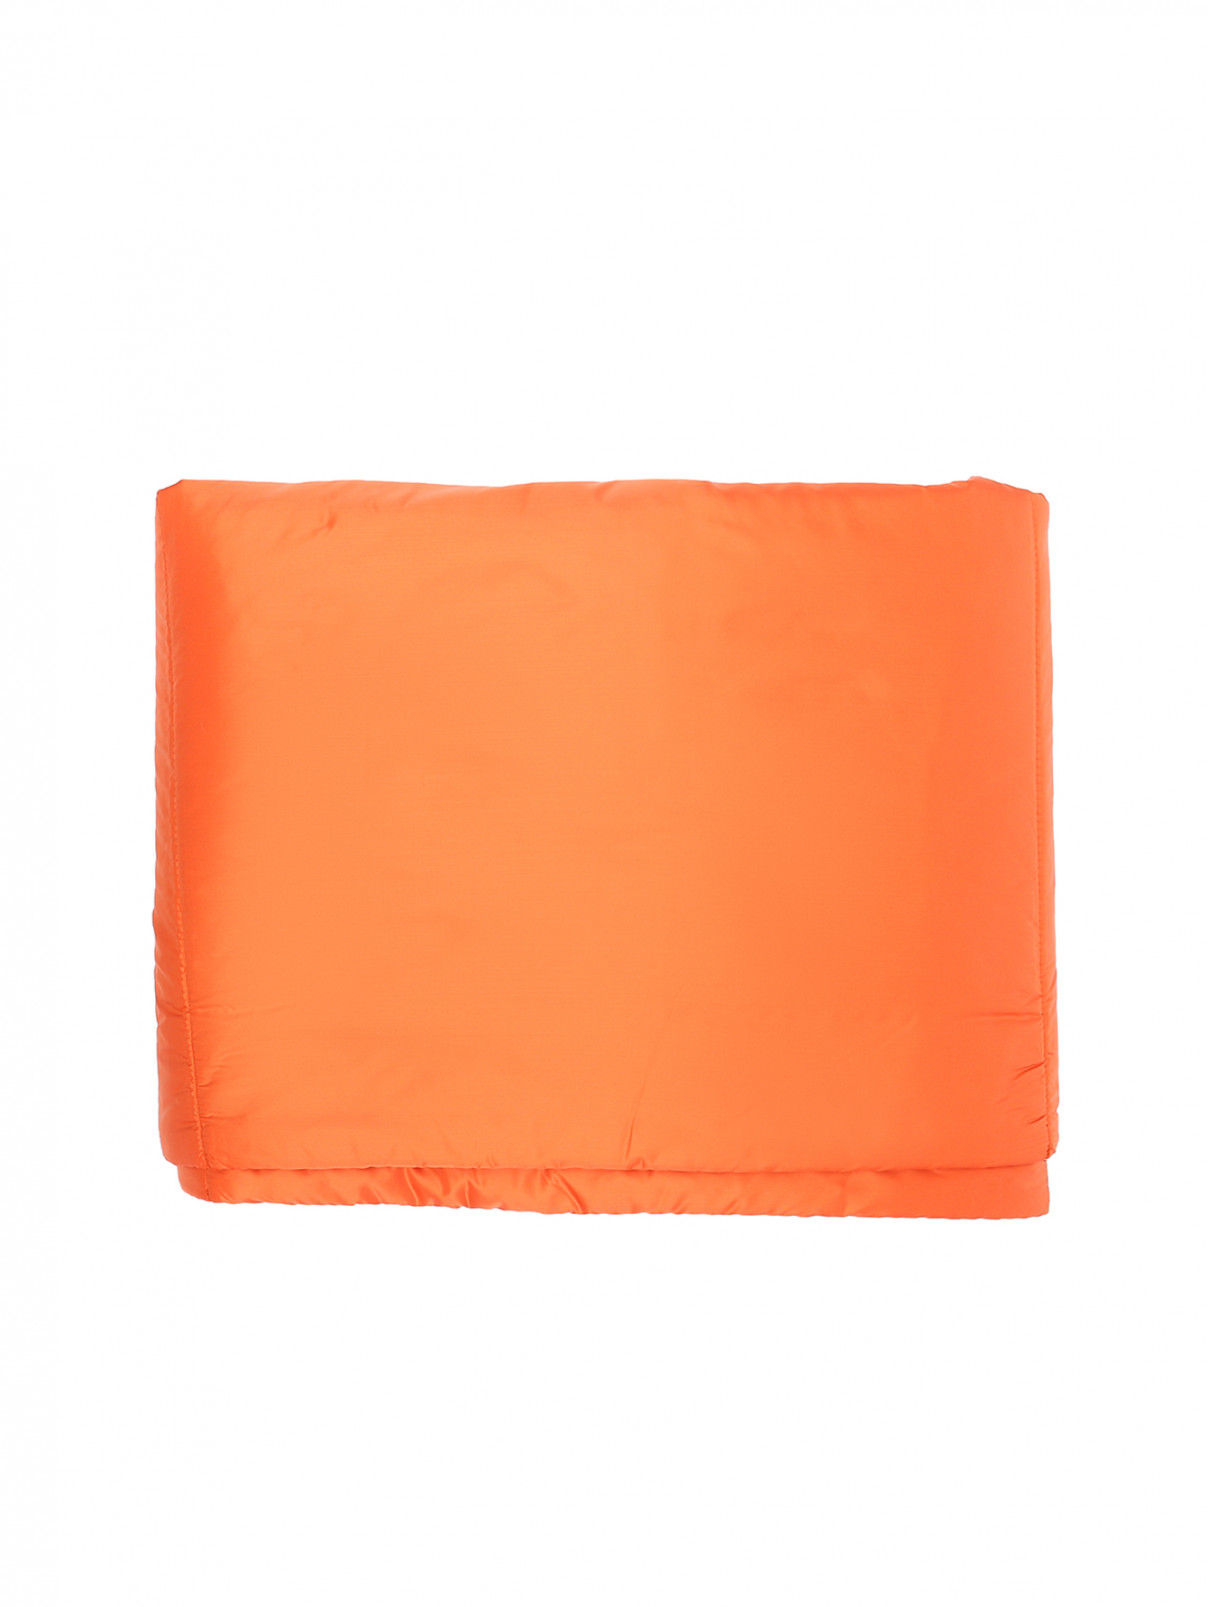 Шарф стеганый Max Mara  –  Общий вид  – Цвет:  Оранжевый